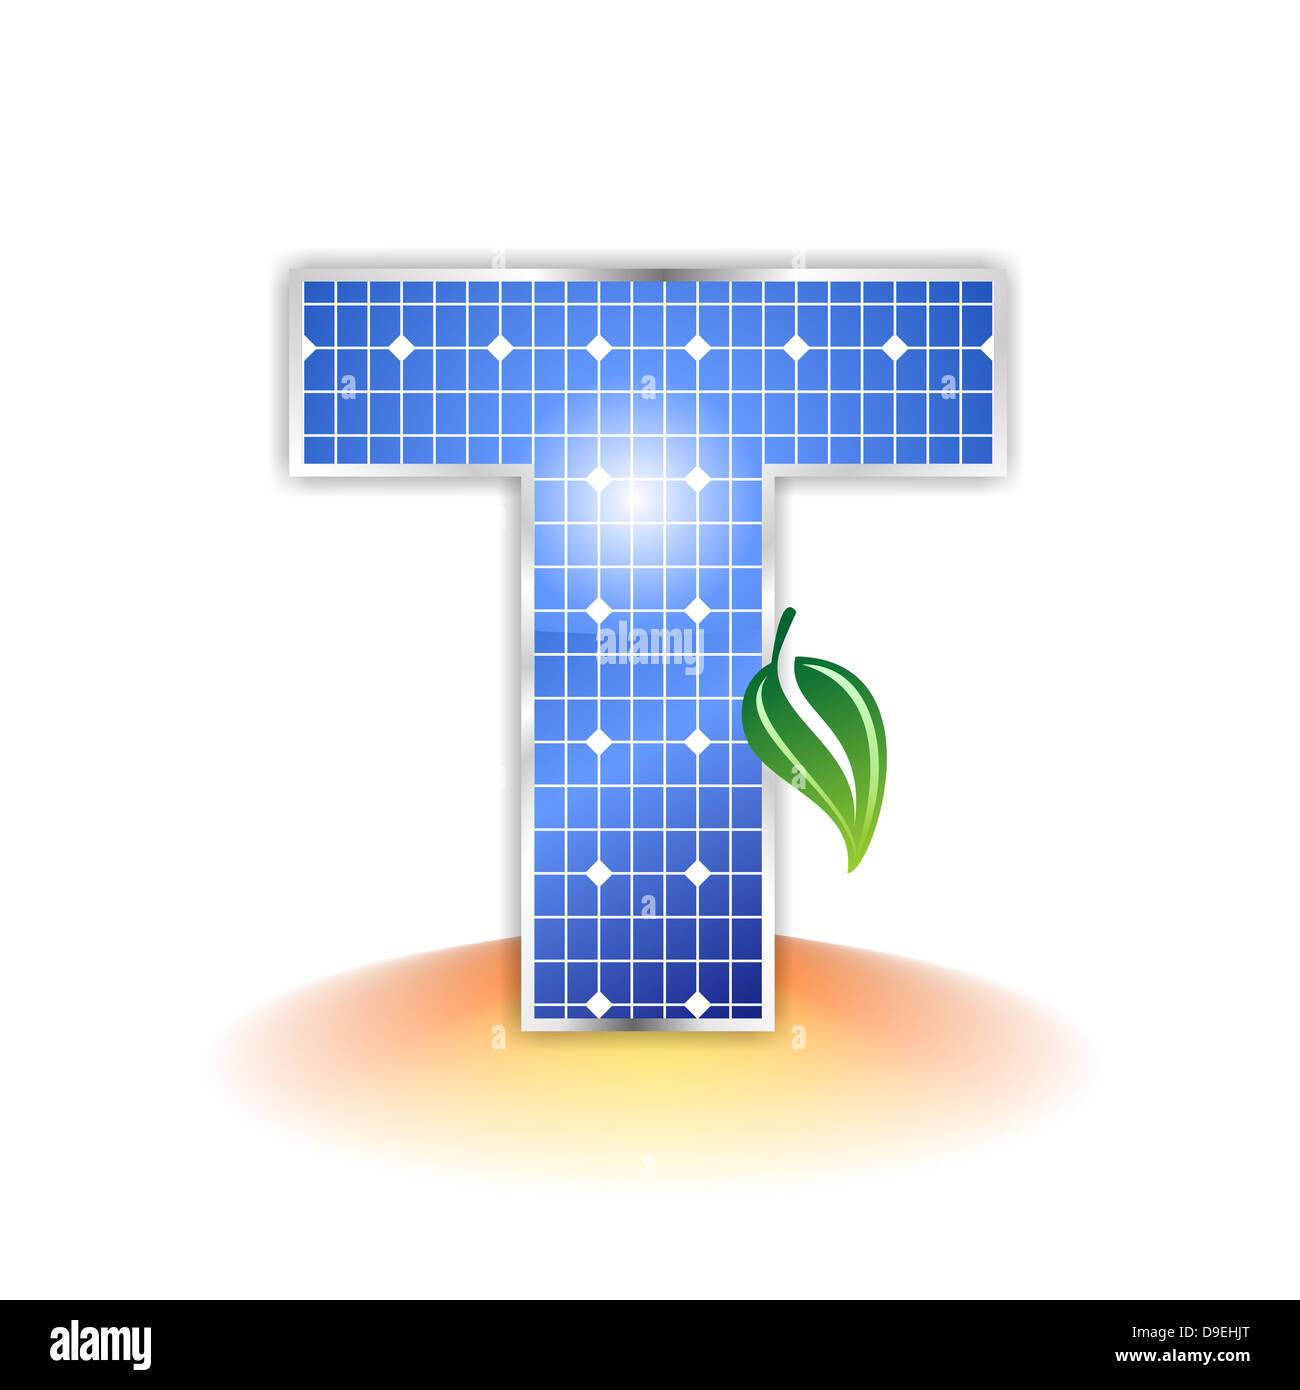 T, capital, lettre T, panneaux solaires, illustration, l'icône, la texture Banque D'Images